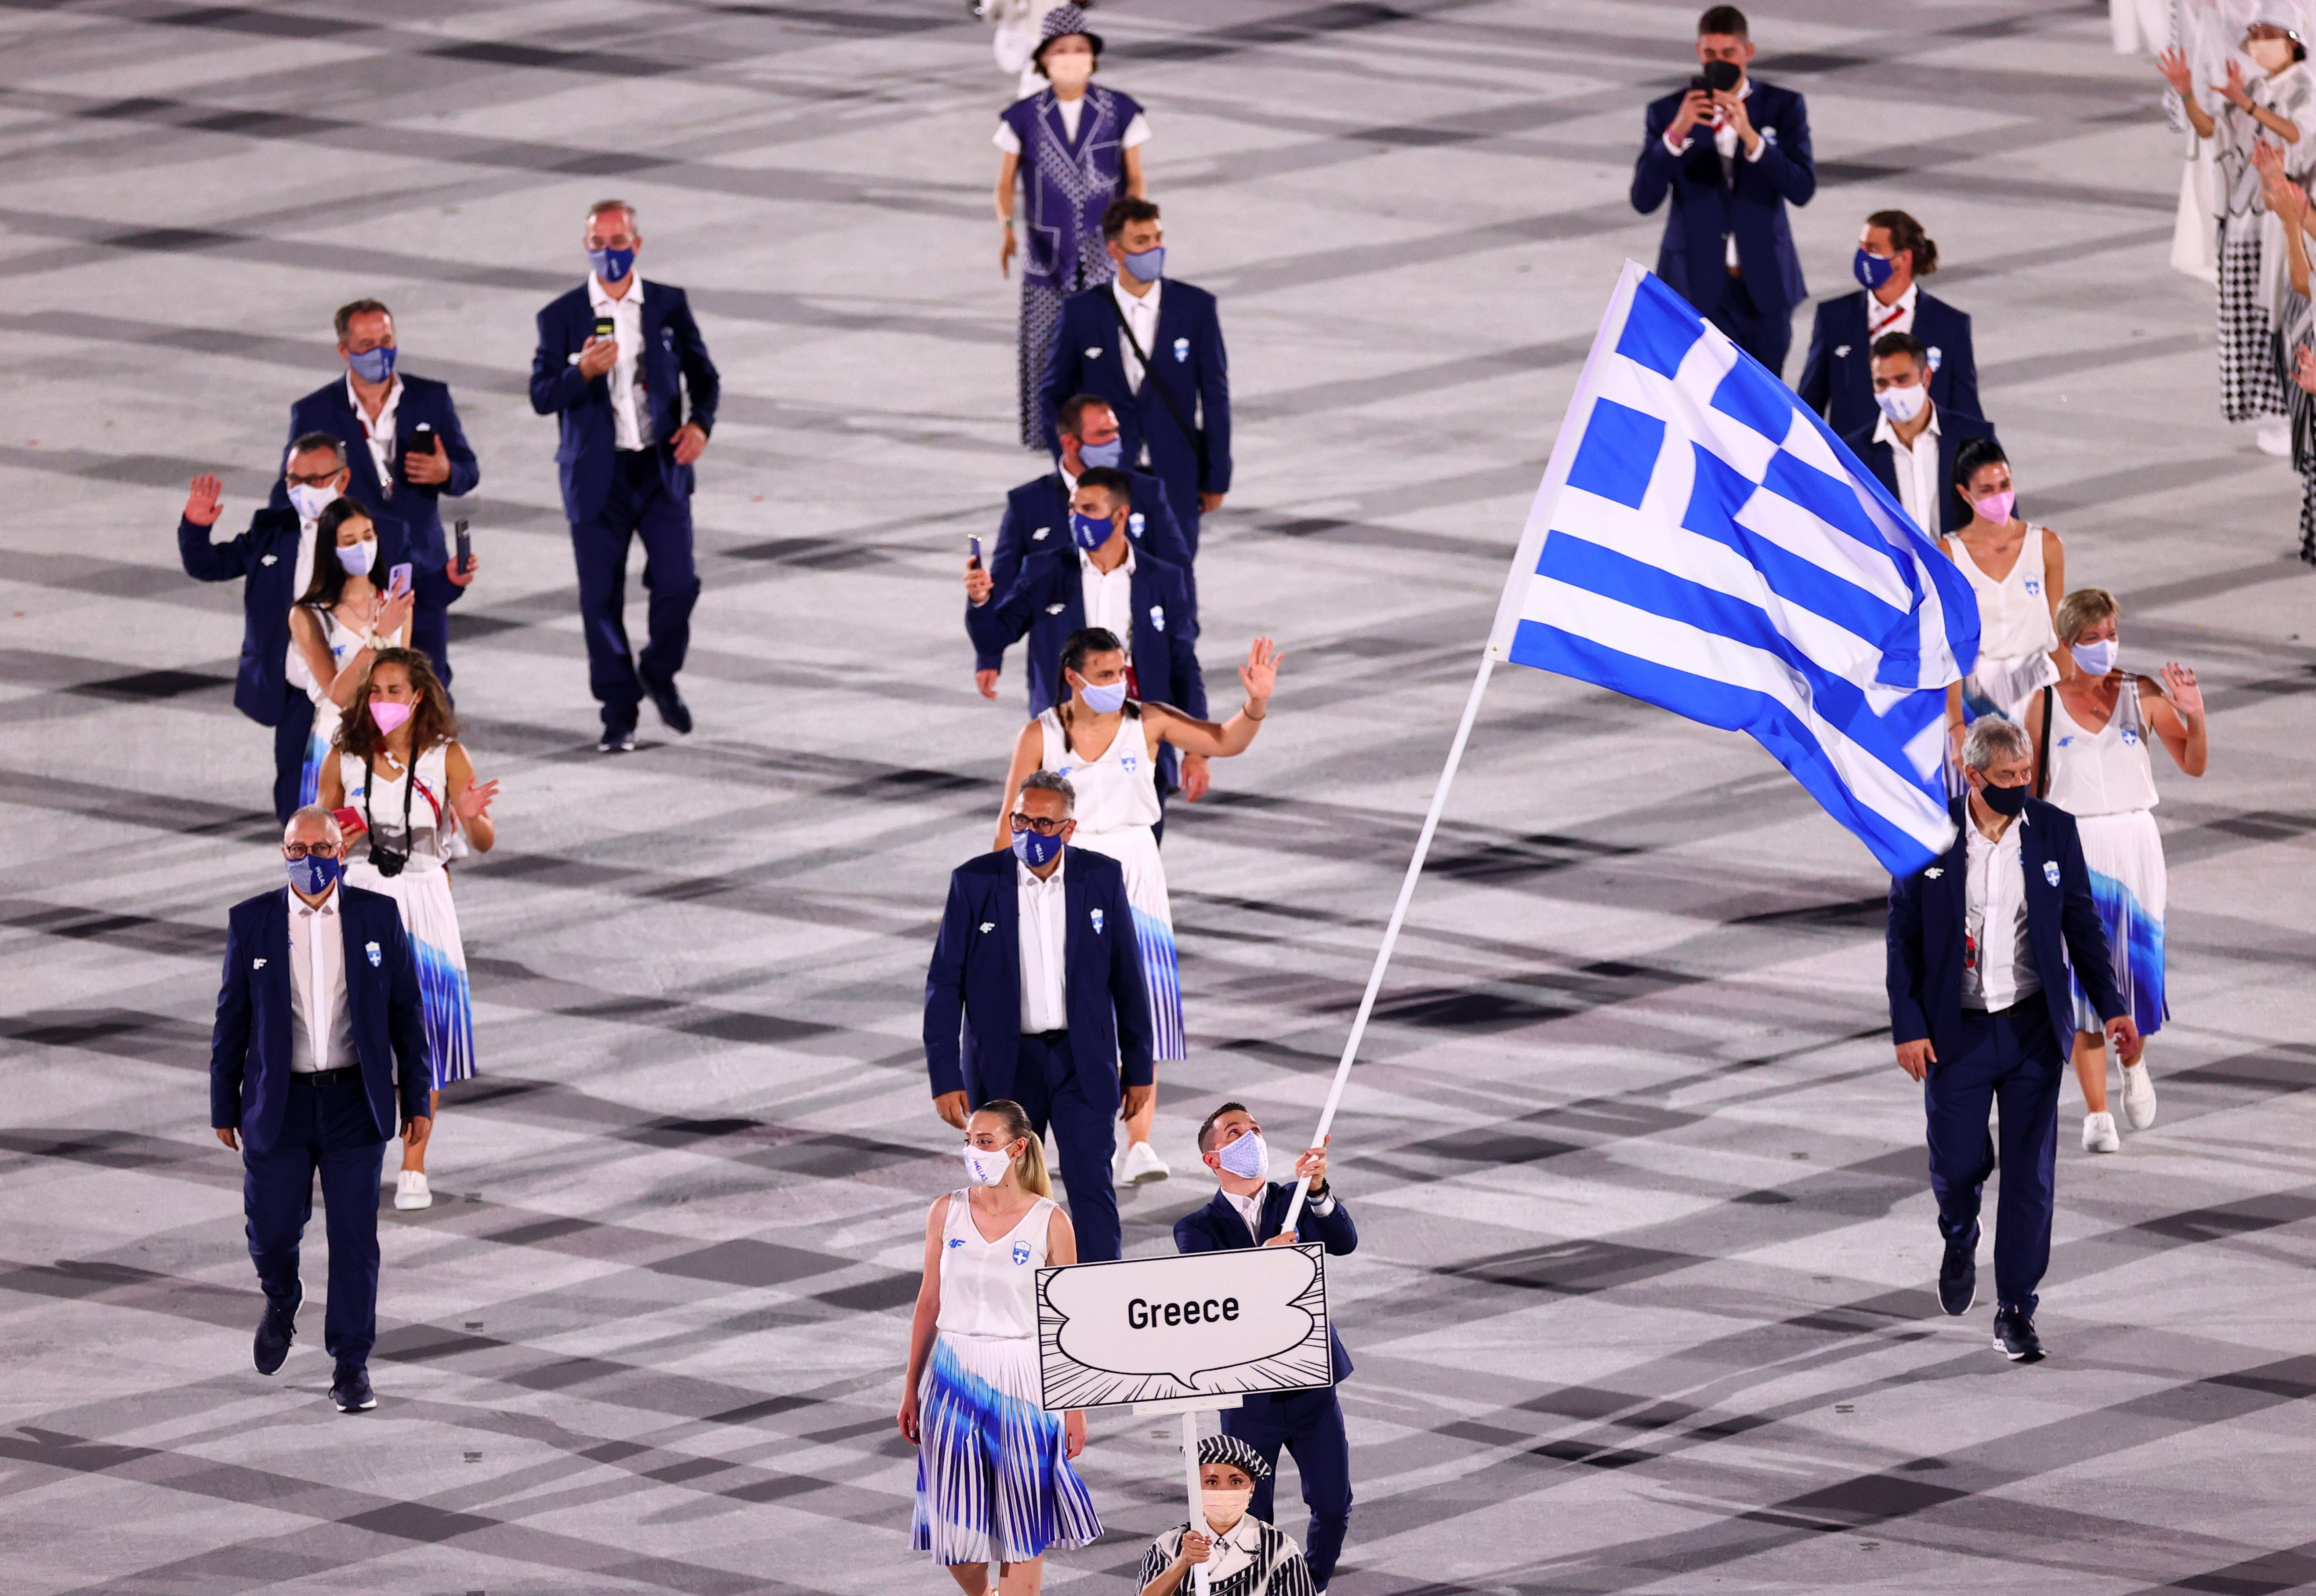 Como marca la tradición, la delegación griega ingresó en primer lugar (REUTERS/Mike Blake)